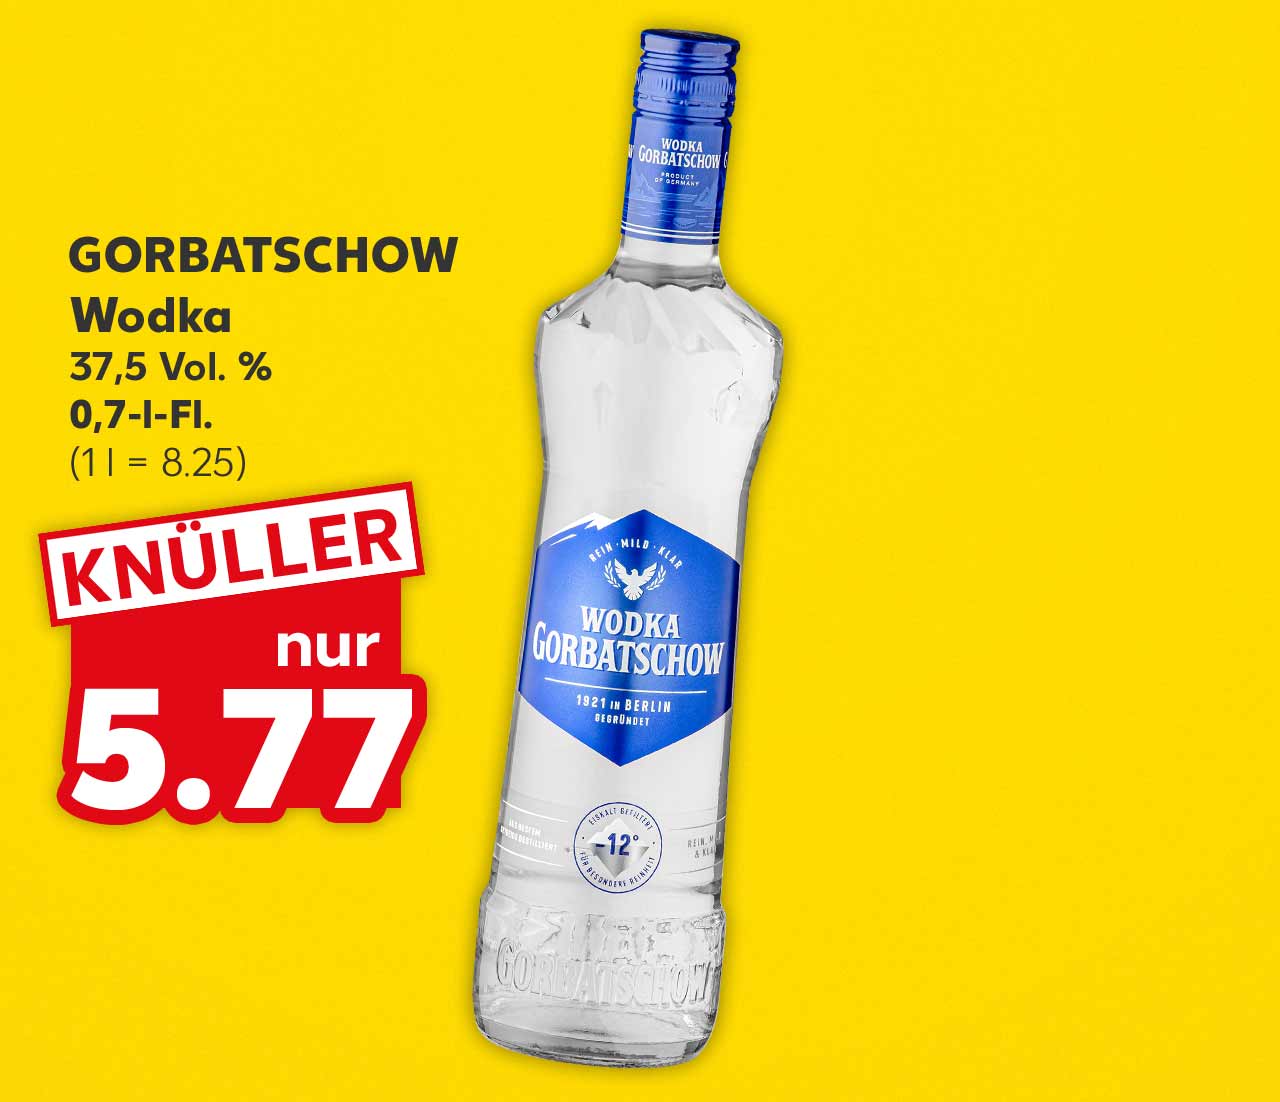 Gorbatschow Wodka, 37,5 Vol. %, 0,7-l-Fl. für 5.77 Euro (1 l = 8.25)